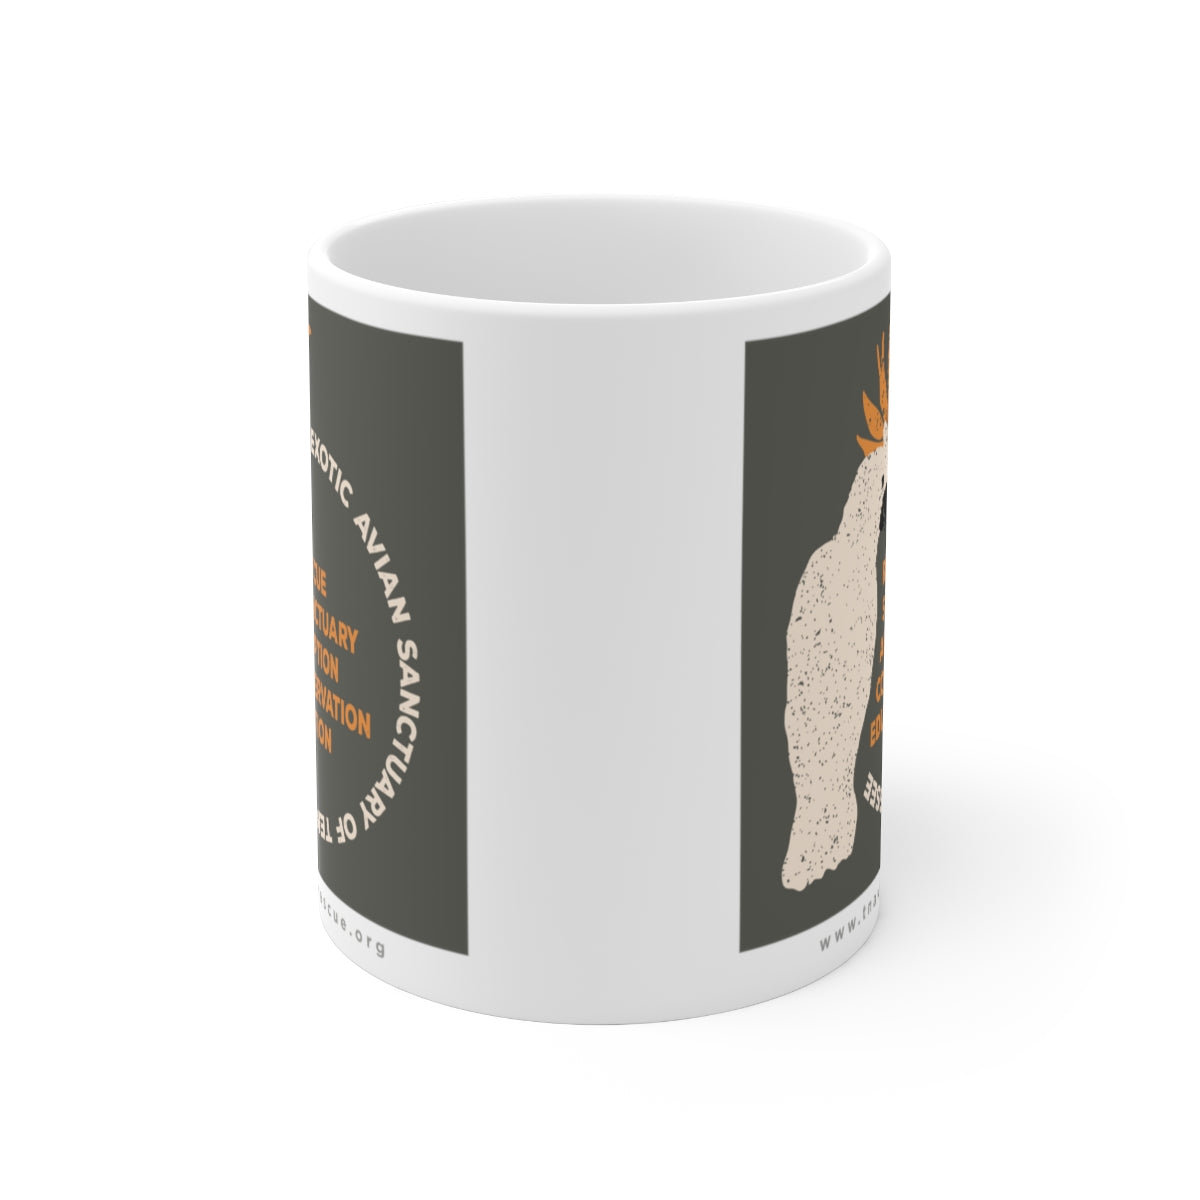 EAST Cockatoo Graphic Ceramic Mug, 11oz